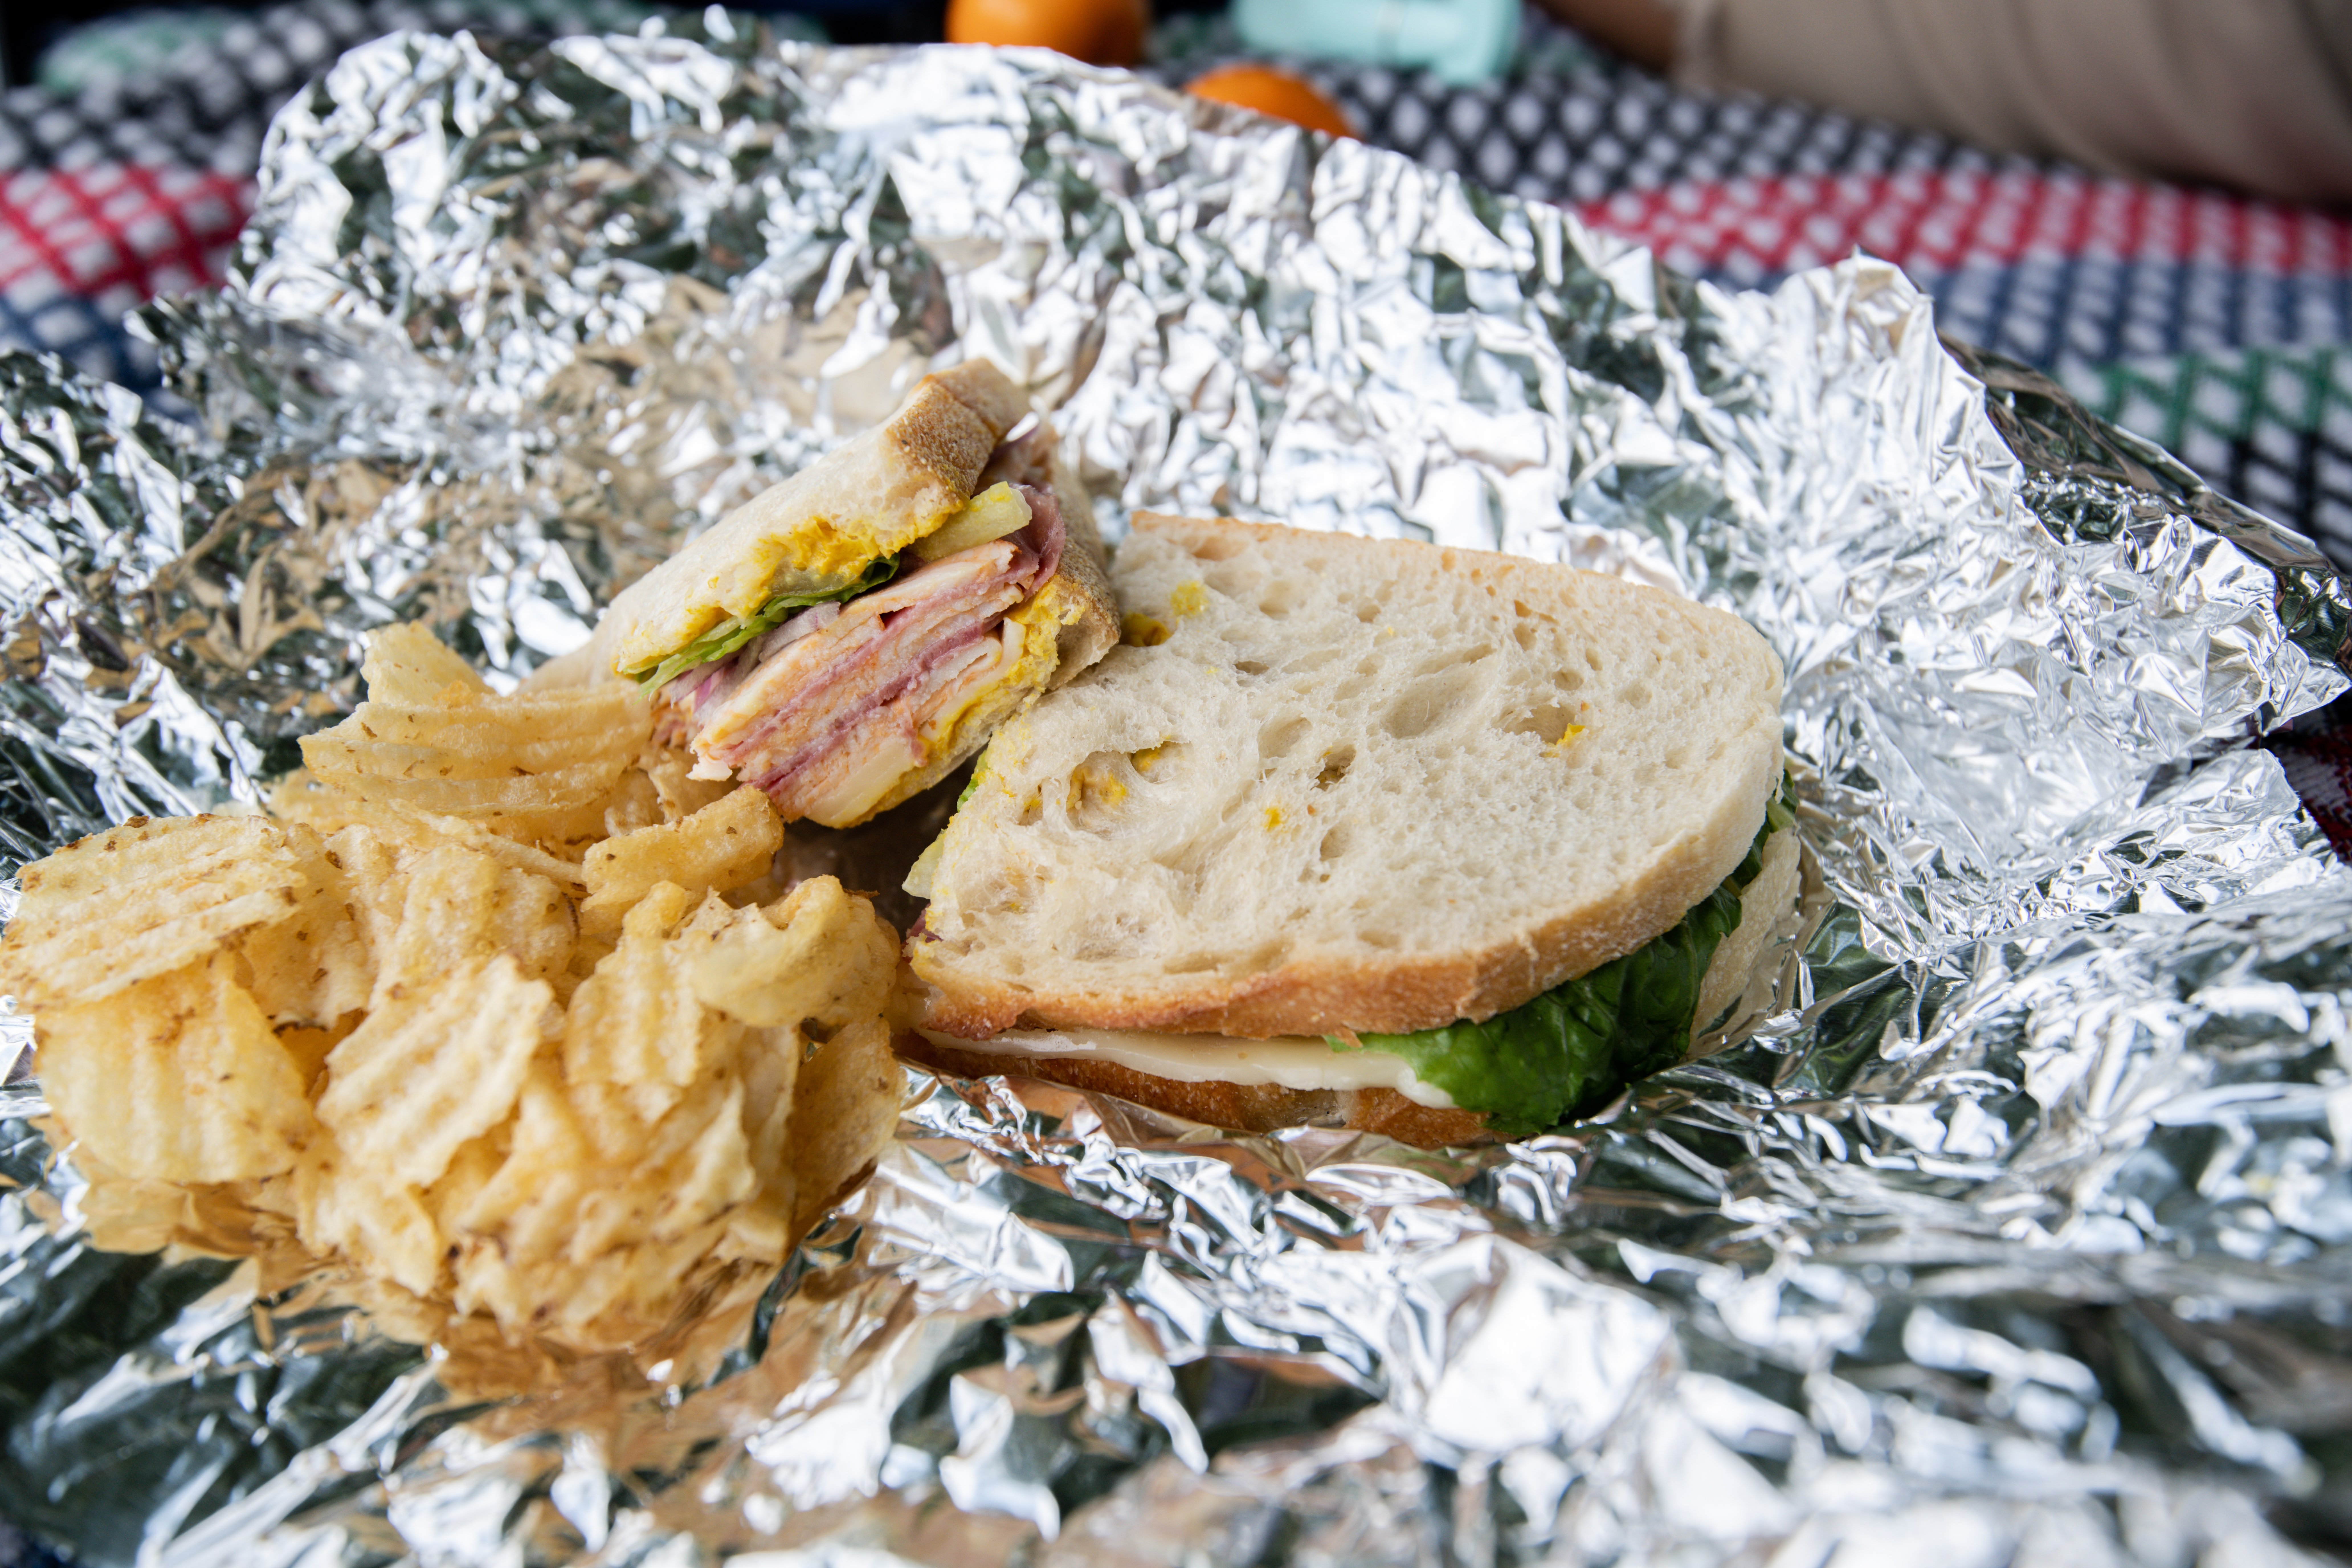 Sandwich con papas chips. | Foto: Unsplash